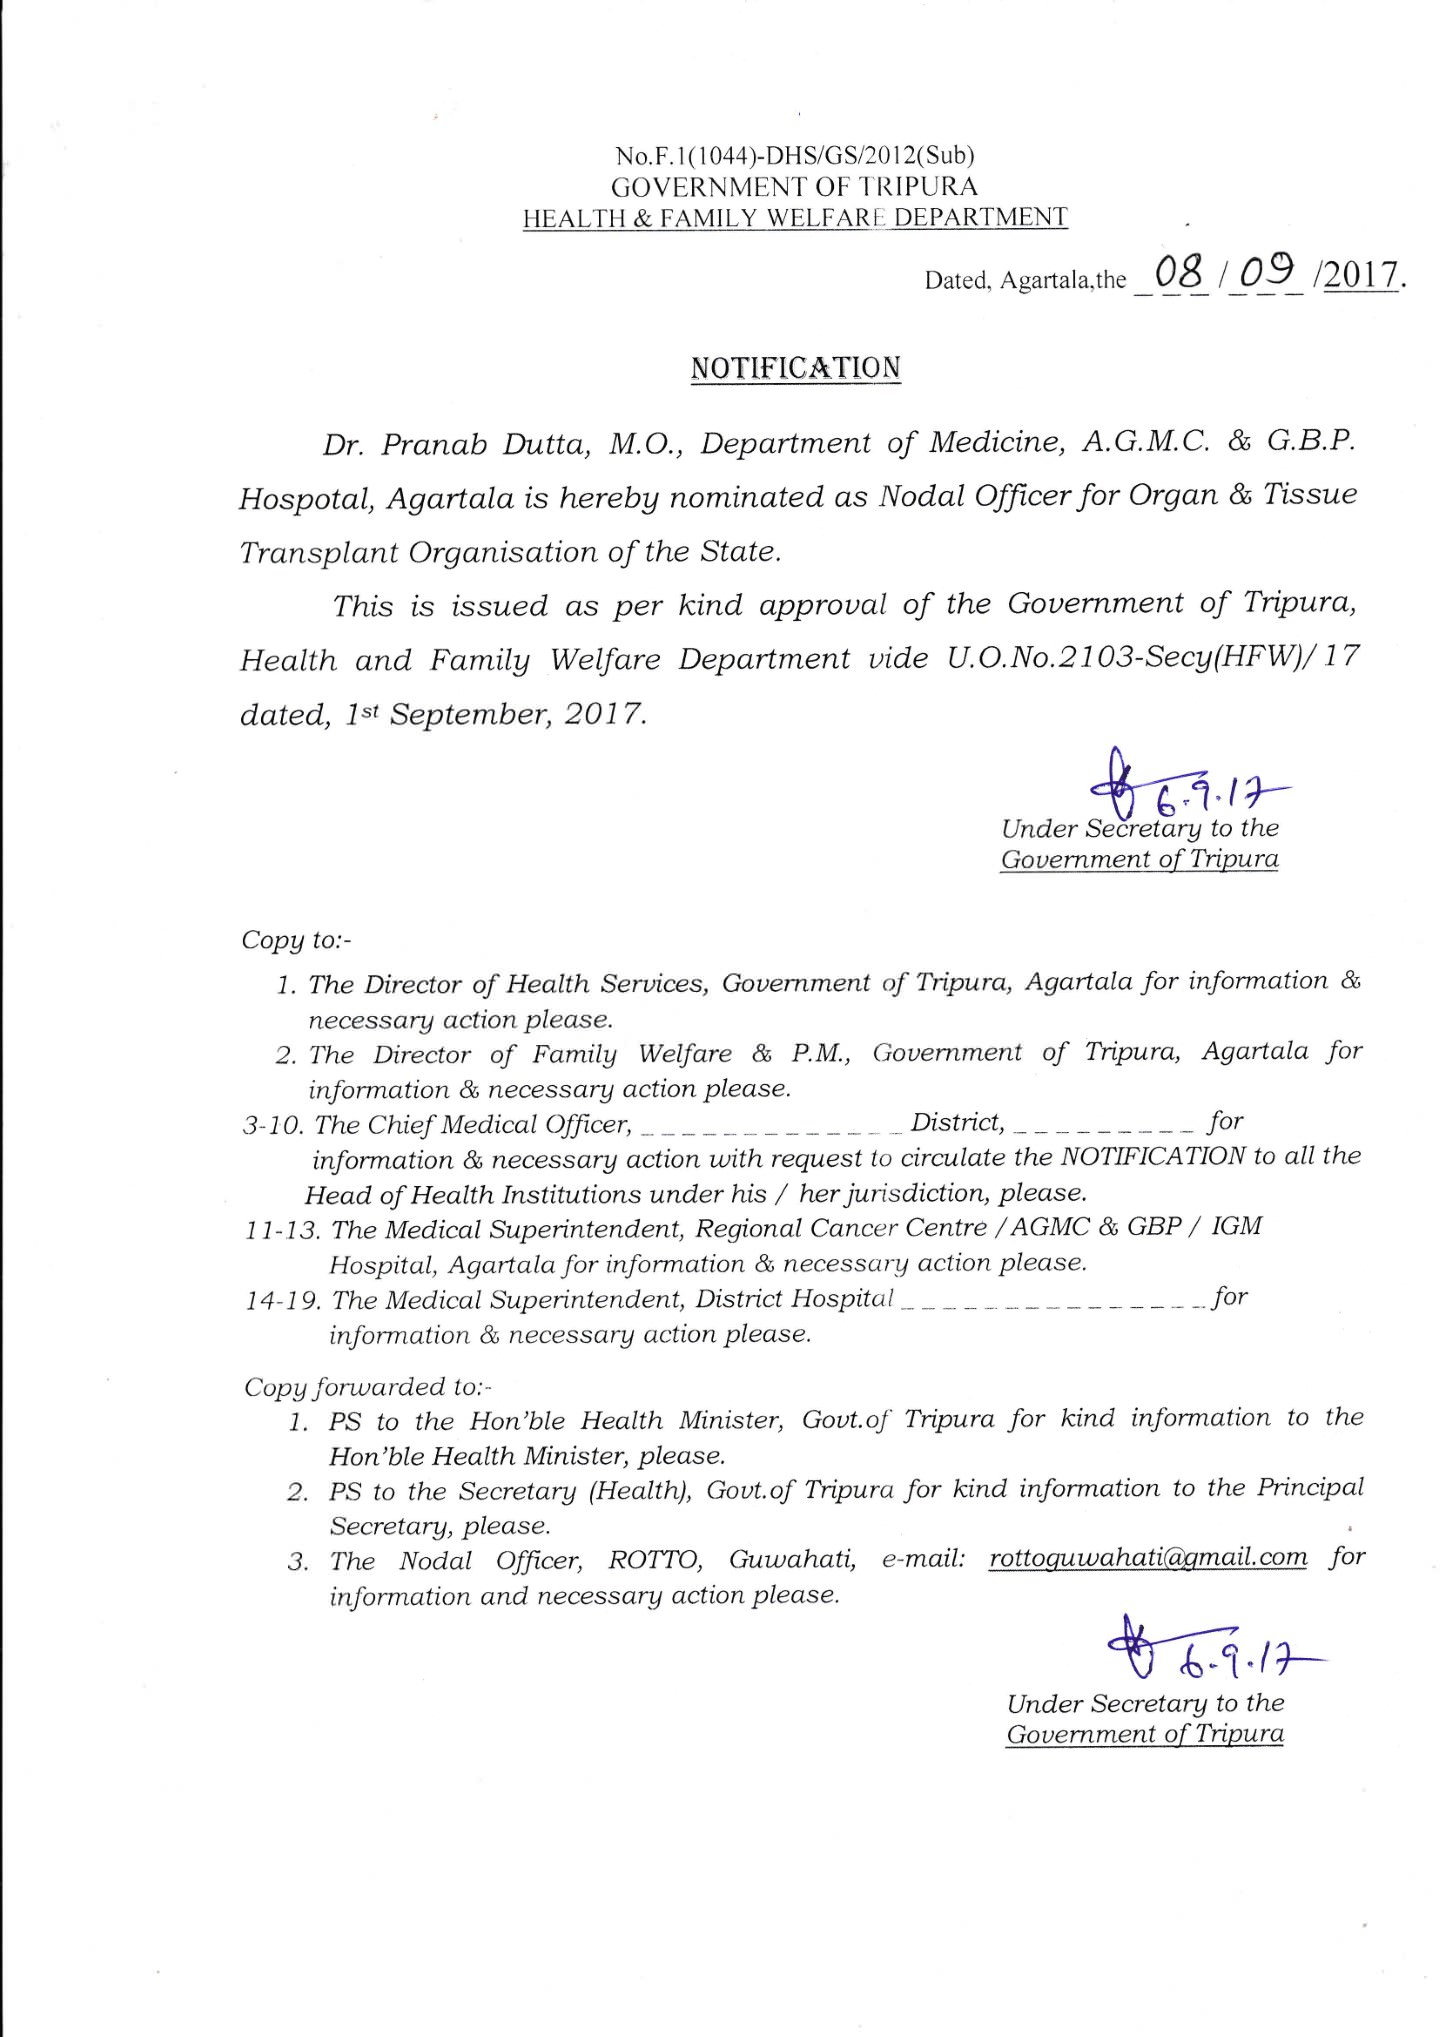 Notification regarding Nodal Officer 0f Organ & Tissue Transplant Organisation of the State